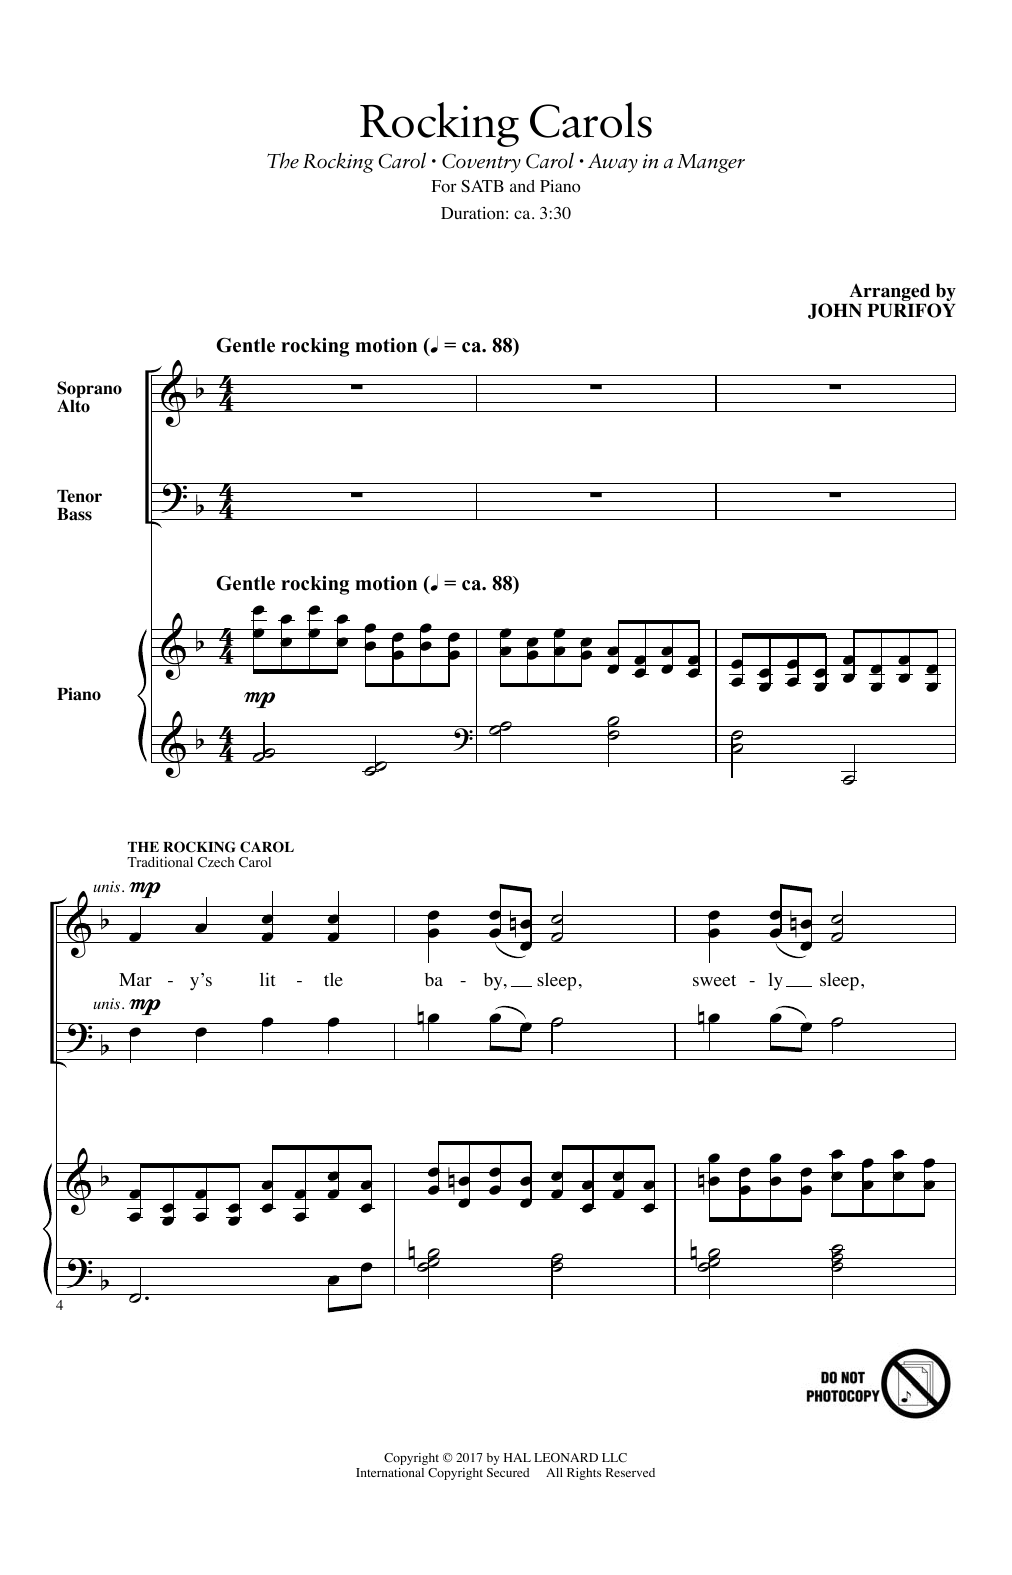 John Purifoy Rocking Carols Sheet Music Notes & Chords for SATB - Download or Print PDF